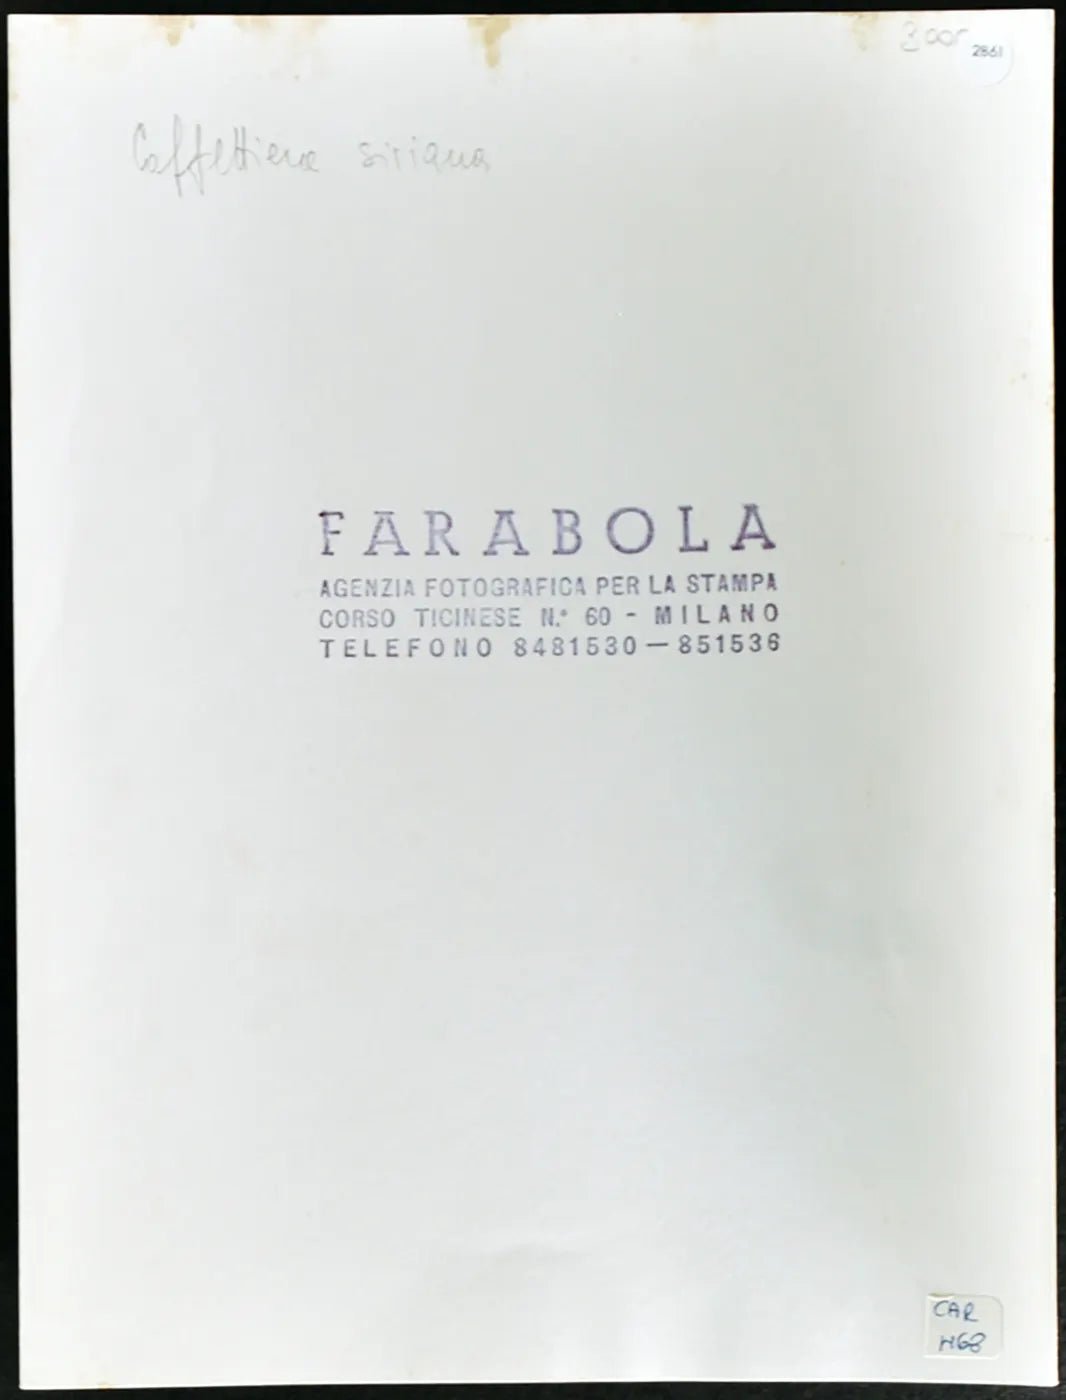 Caffettiera siriana anni 60 Ft 2861 - Stampa 24x18 cm - Farabola Stampa ai sali d'argento